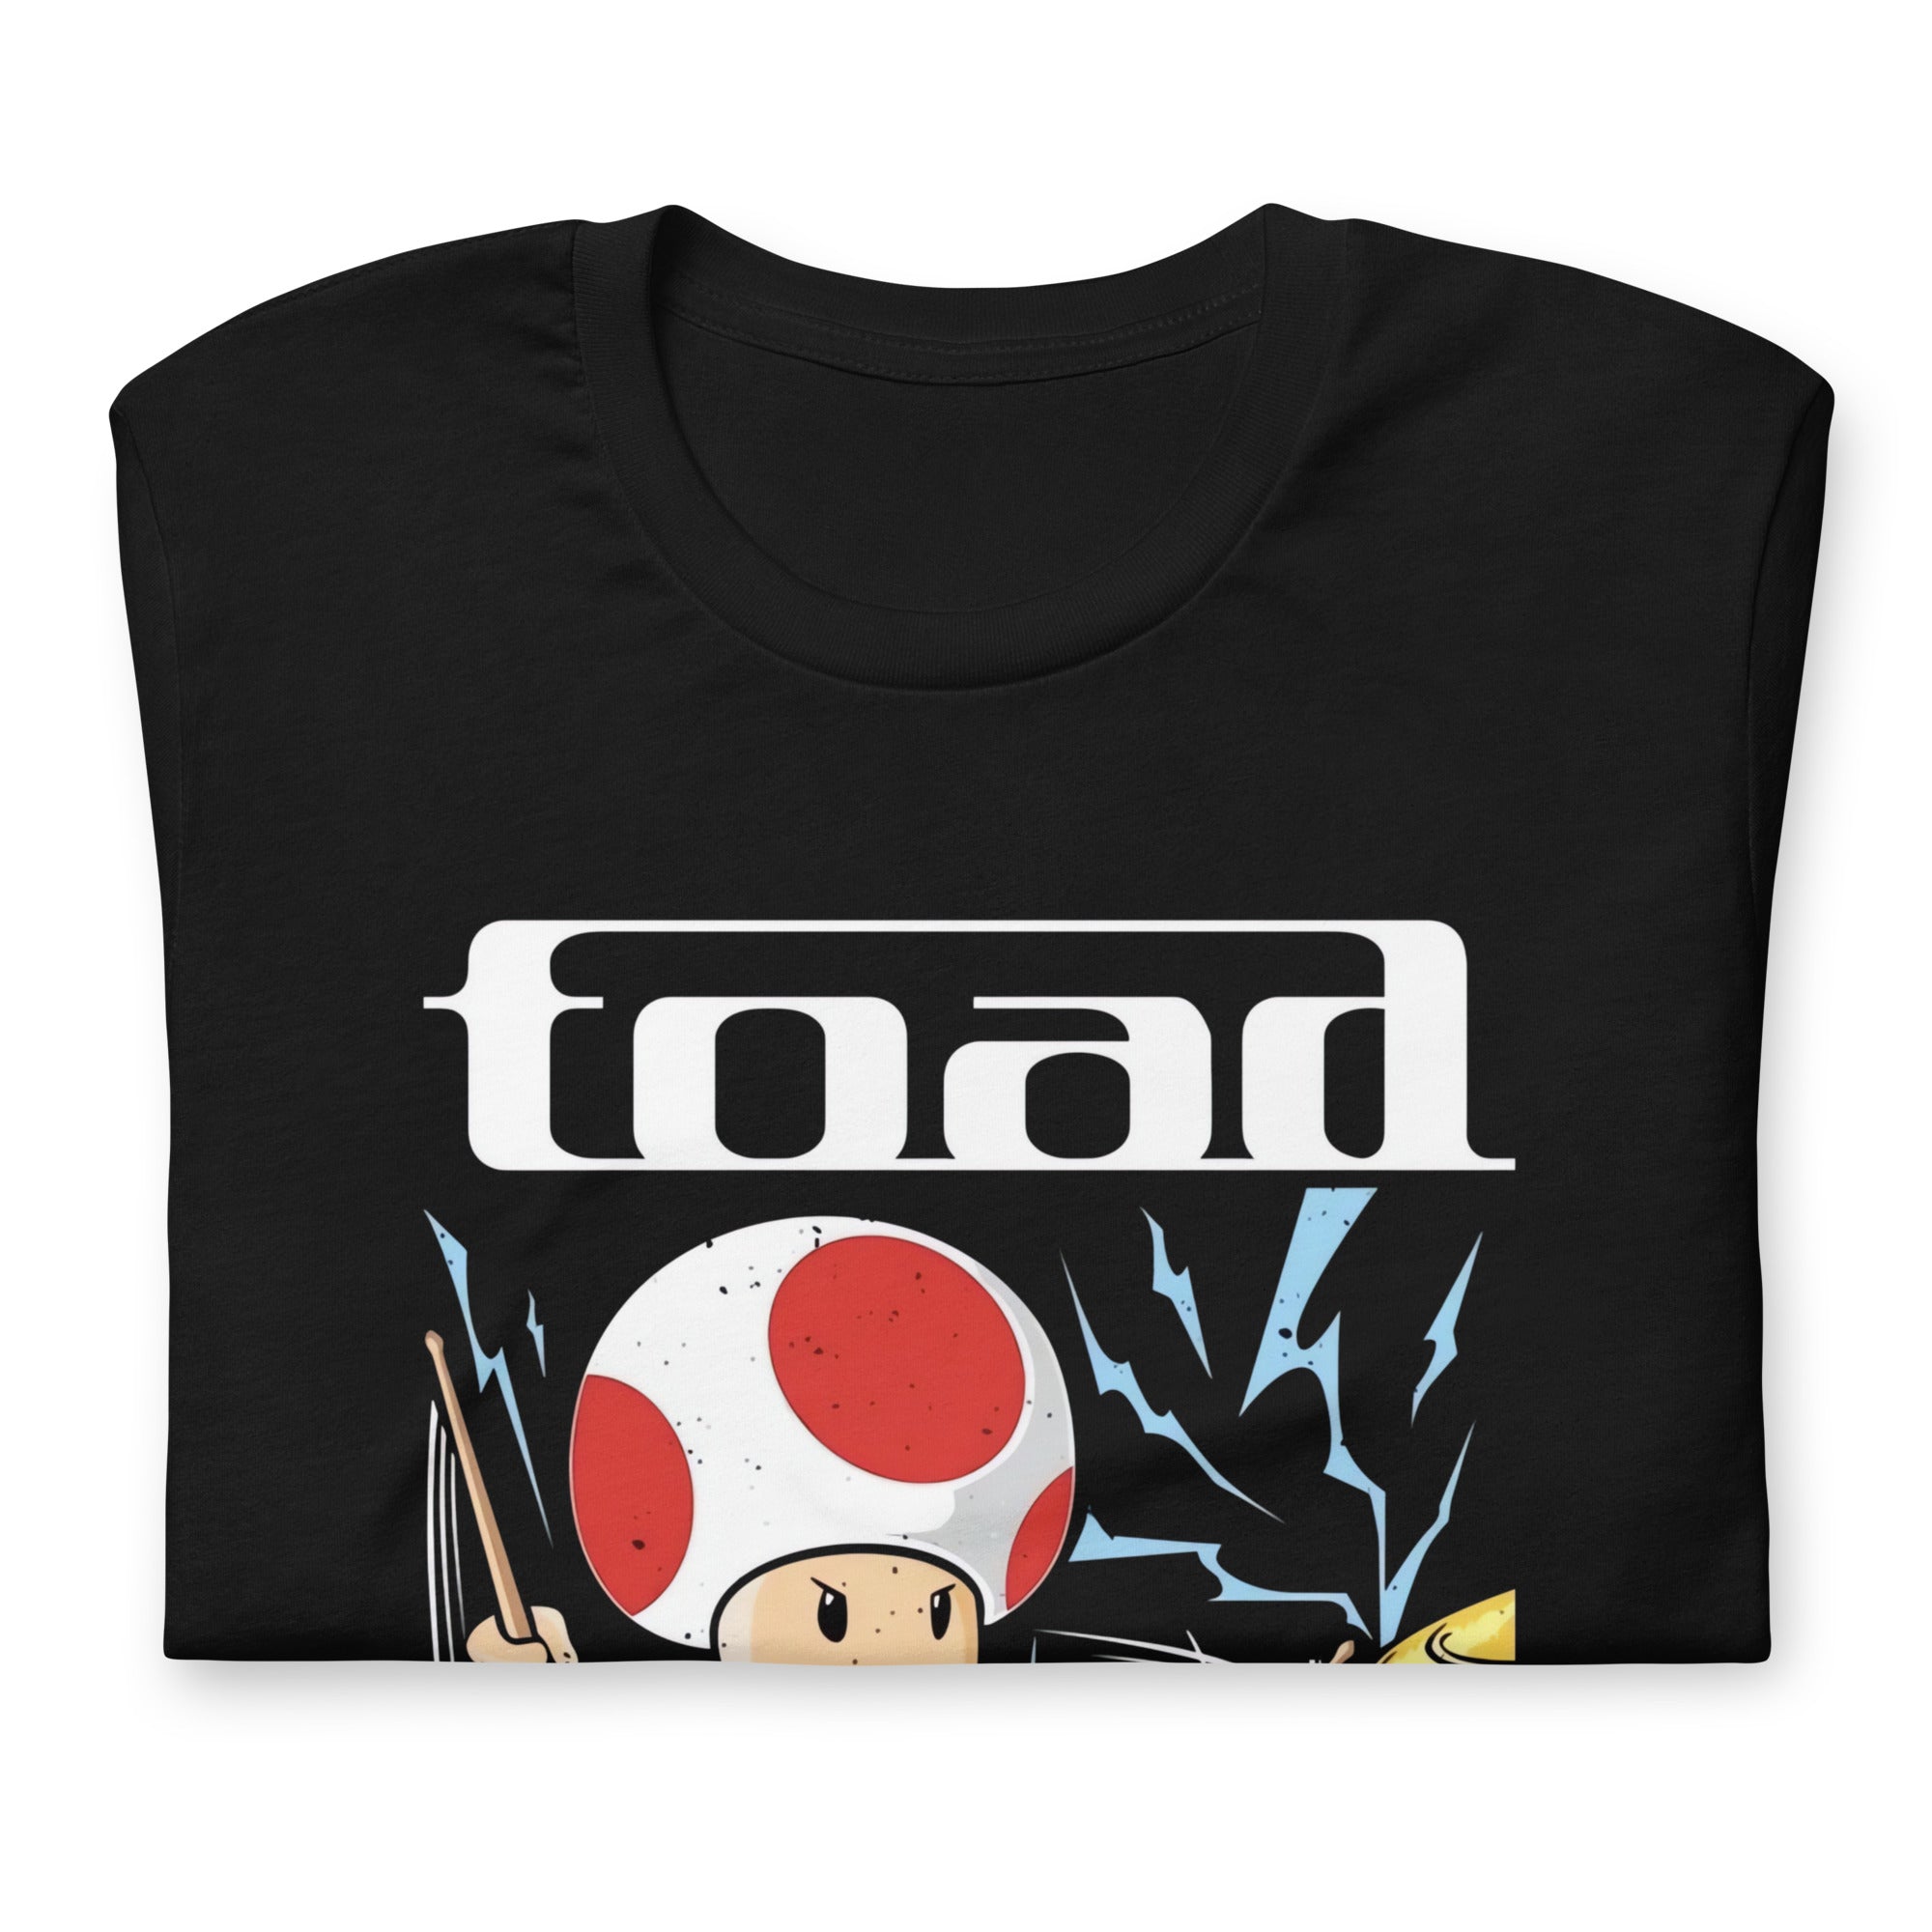 Playera de Toad, Es un producto de ropa que es ideal para los fanáticos de Mario Bross y Tool muestra tu amor de manera divertida y original.